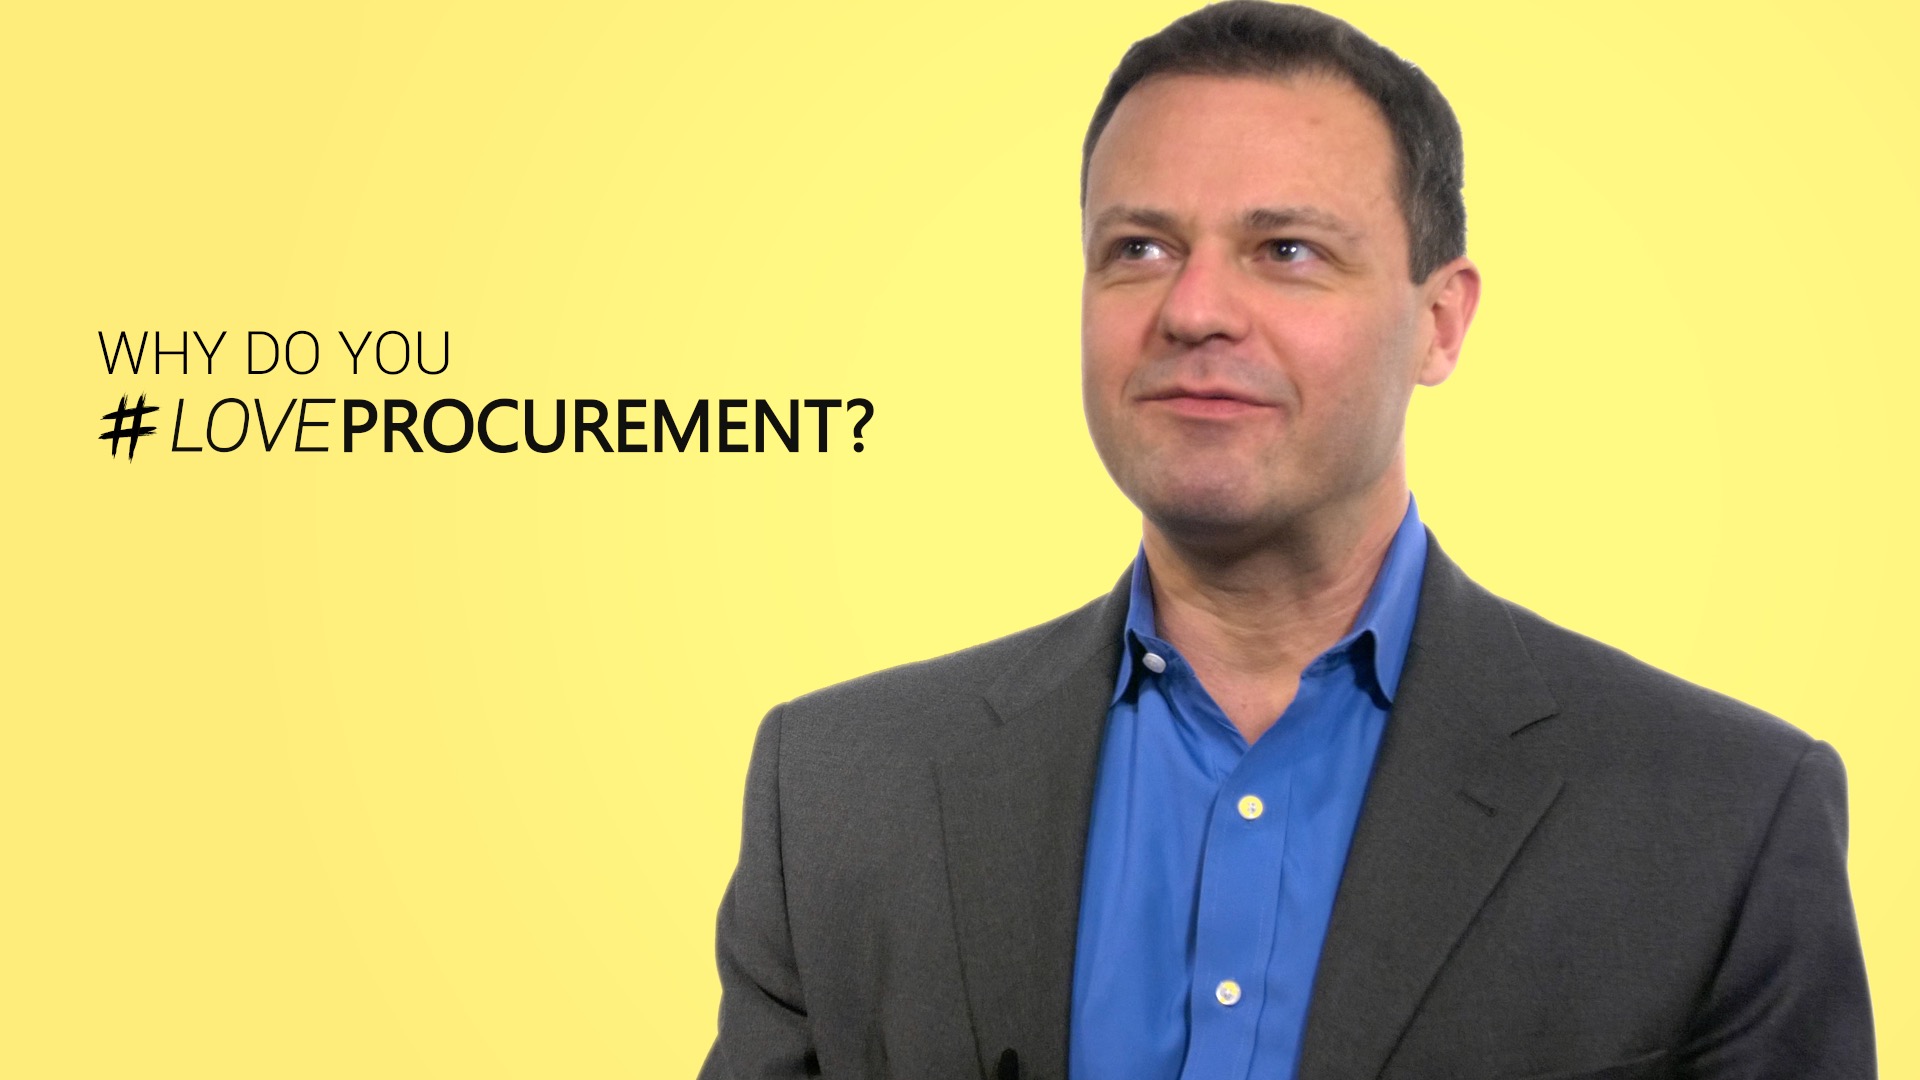 Loveprocurement Video - Alex Saric - Ivalua